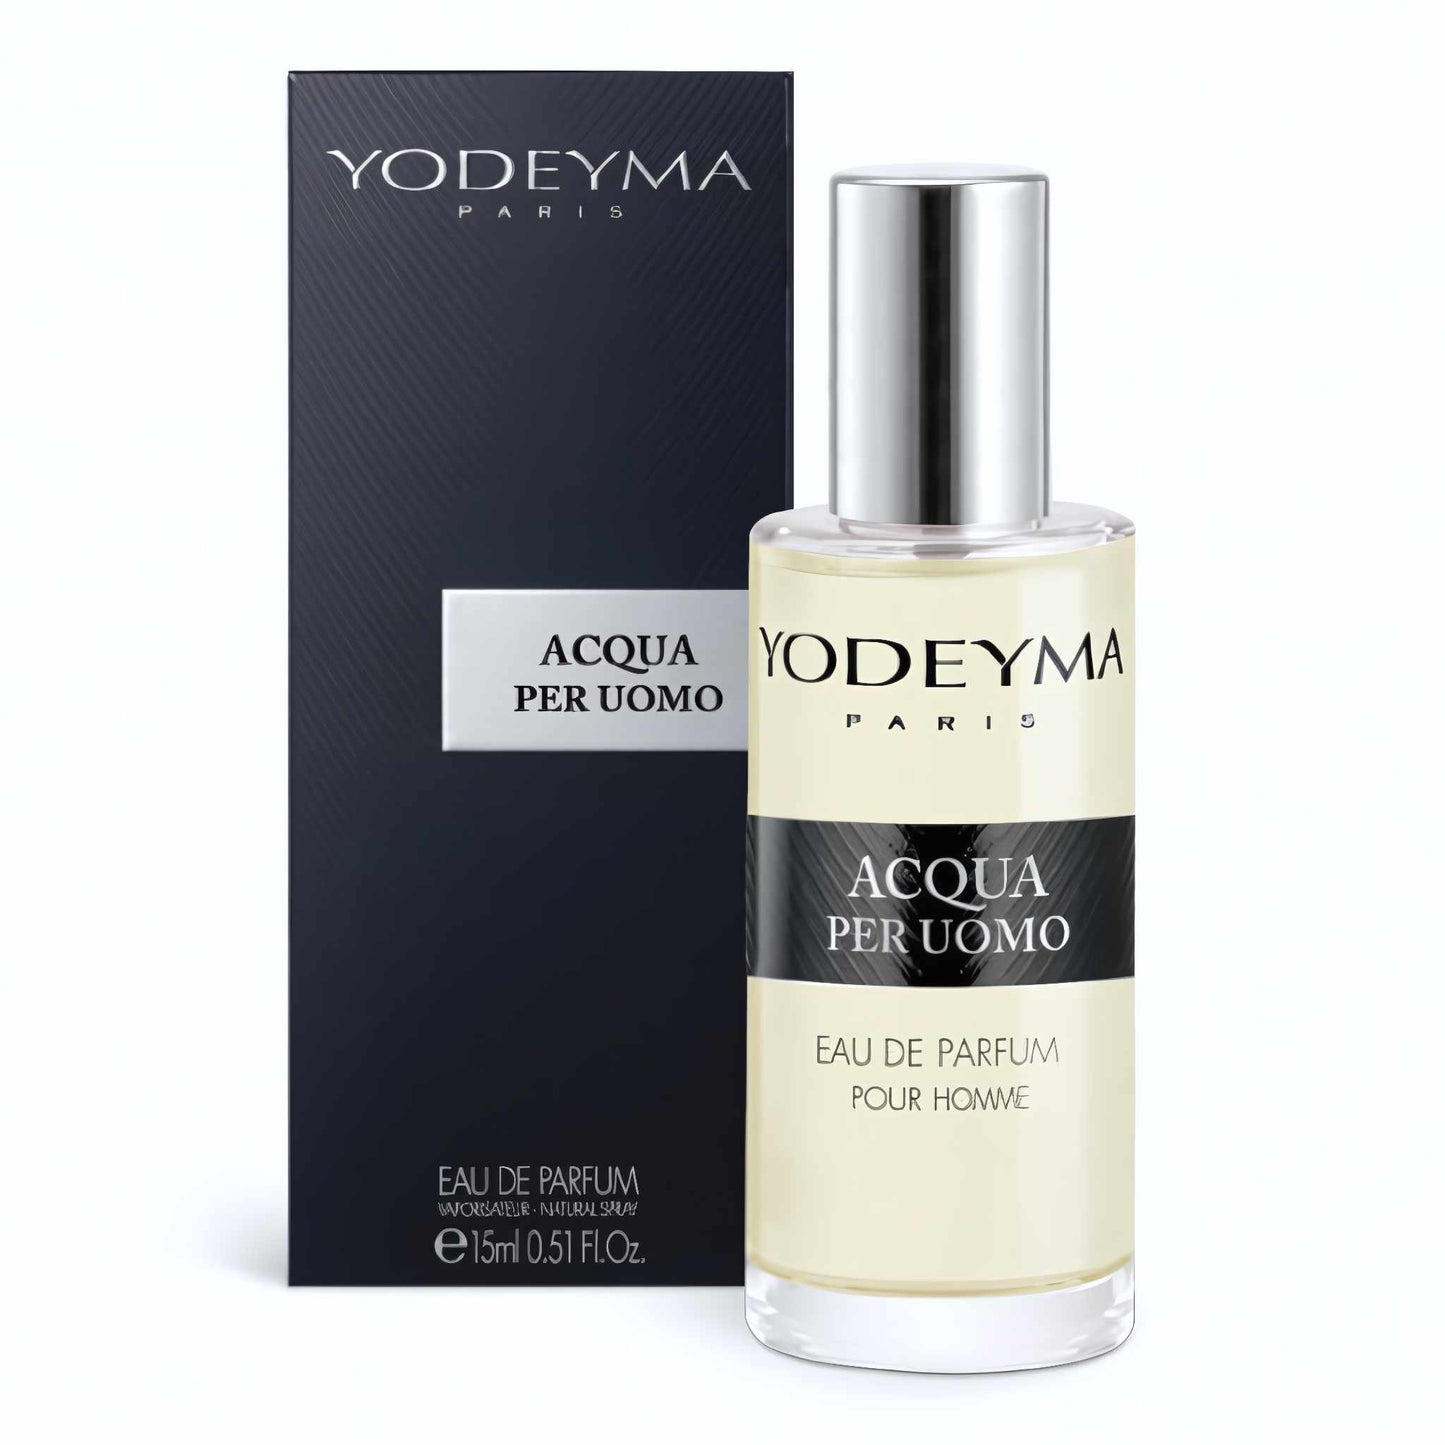 Yodeyma Acqua Per Uomo Eau de Parfum 15 ml